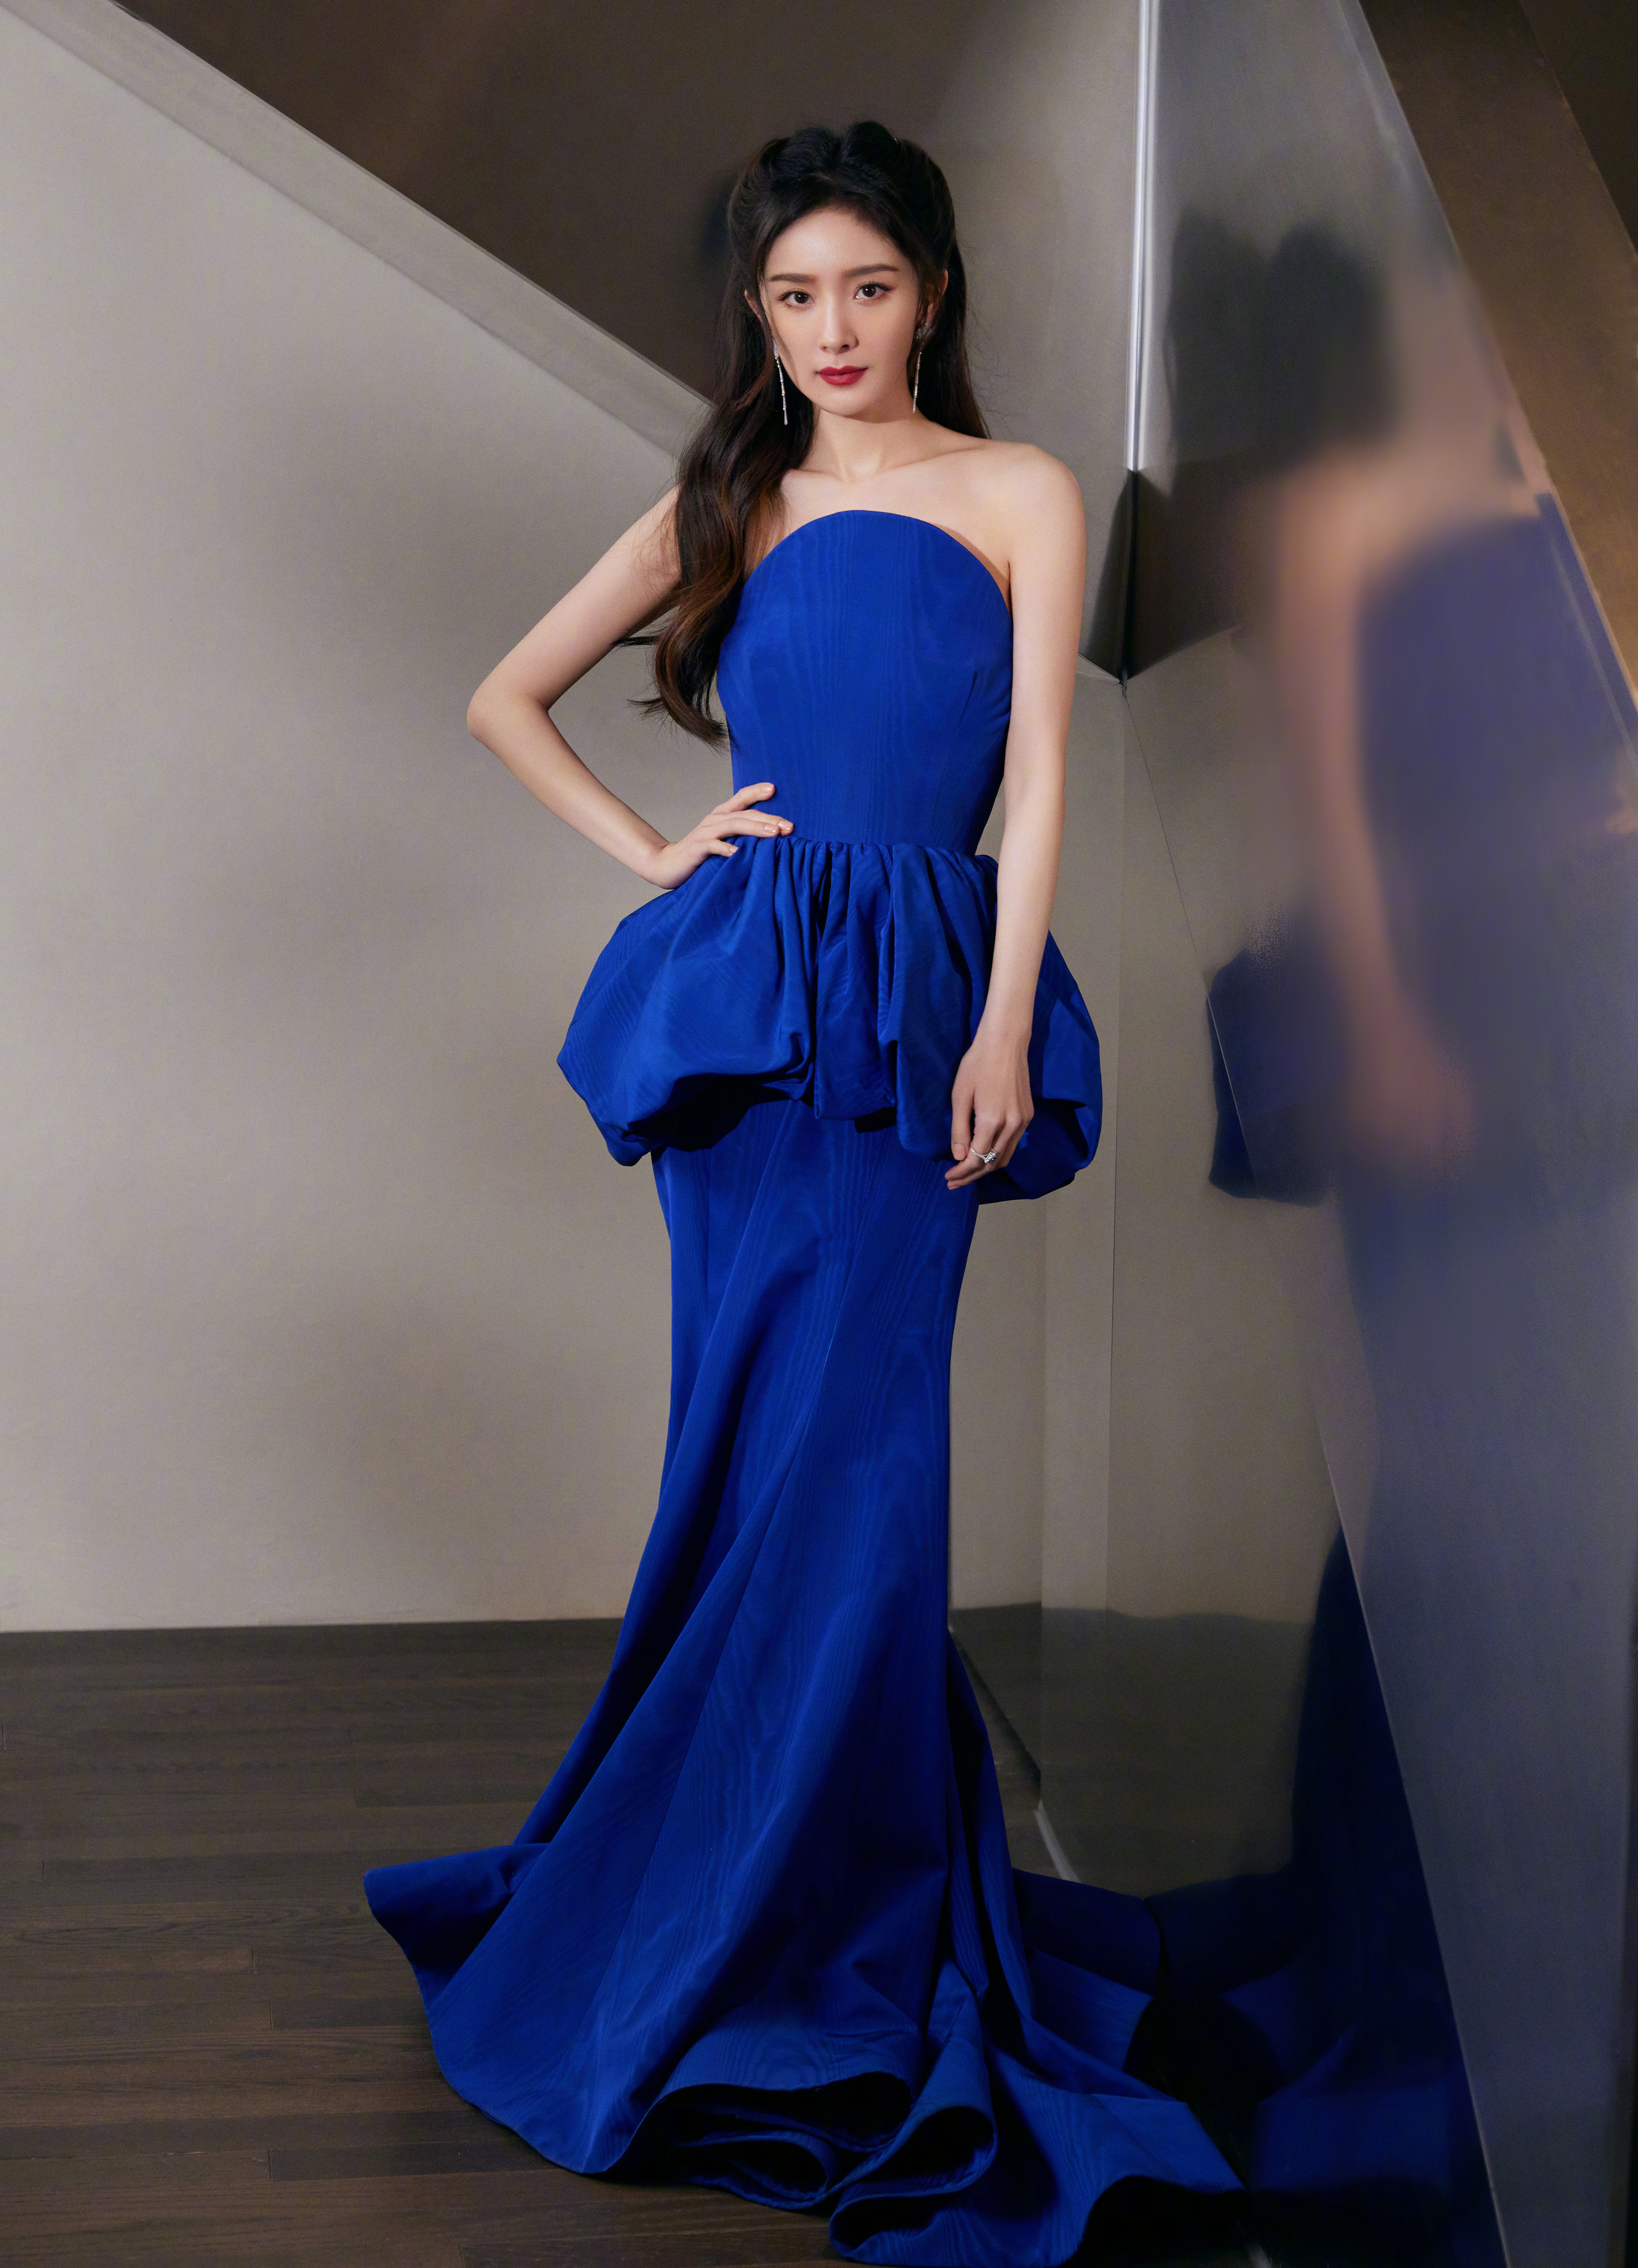 时尚带货女王杨幂,绚丽舞台,蓝色经典